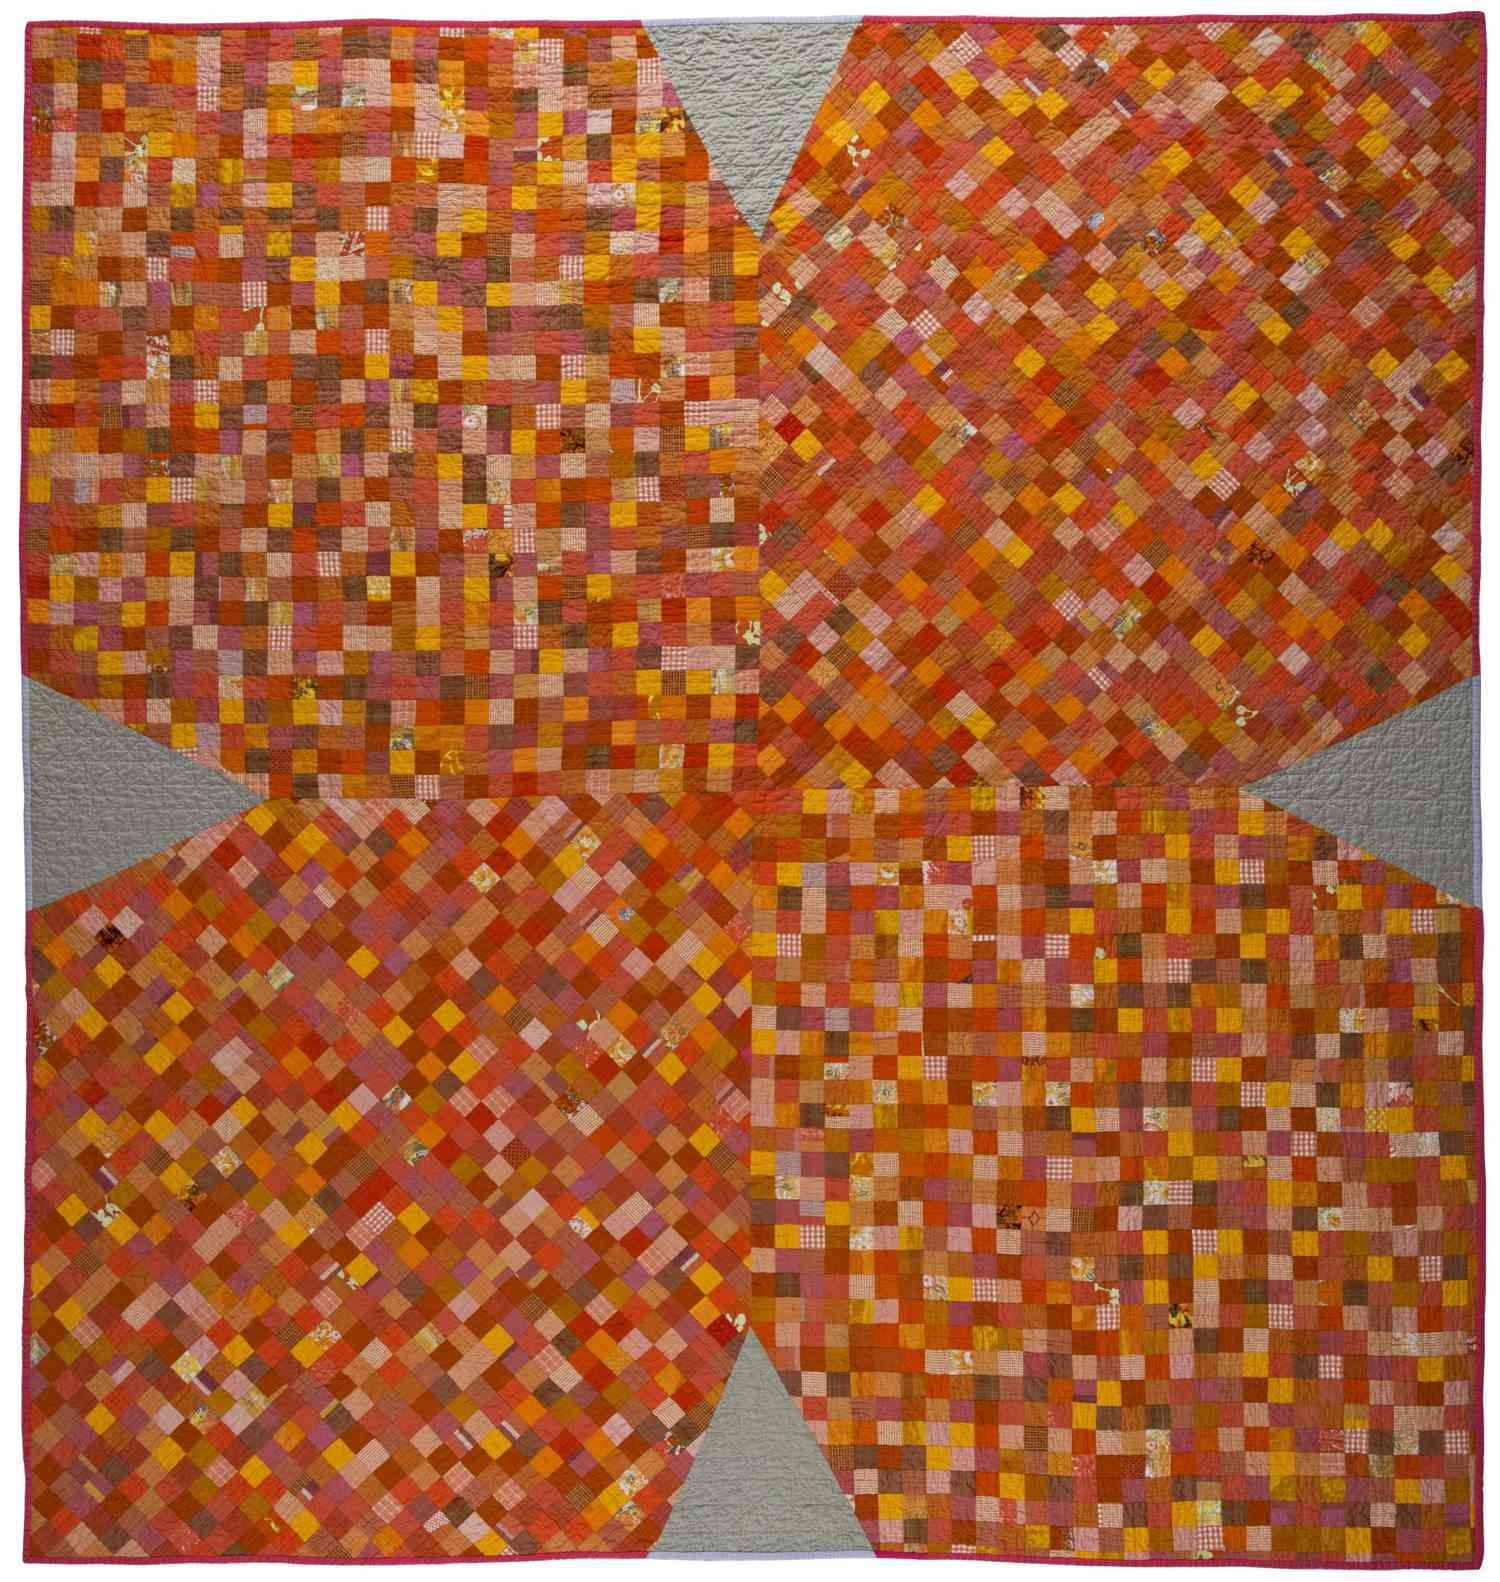 Sarah Nishura orange x-shape quilt with varying shades of orange squares.